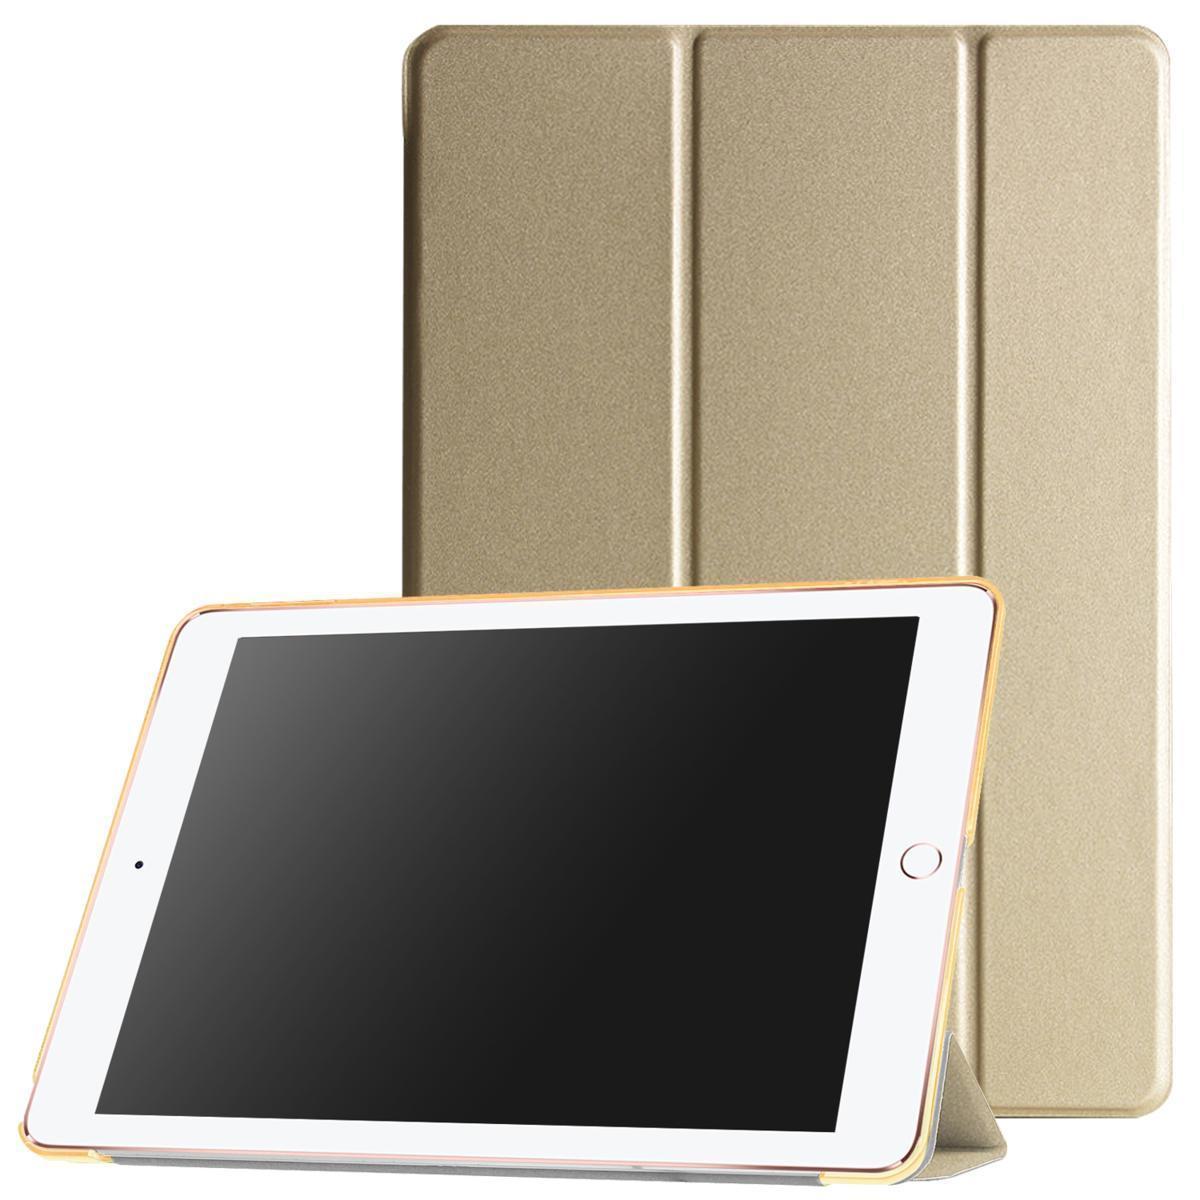 iPad ケース iPad Pro (9.7インチ) 三つ折スマートカバー PUレザー アイパッド カバー スタンド機能 ゴールド_画像1